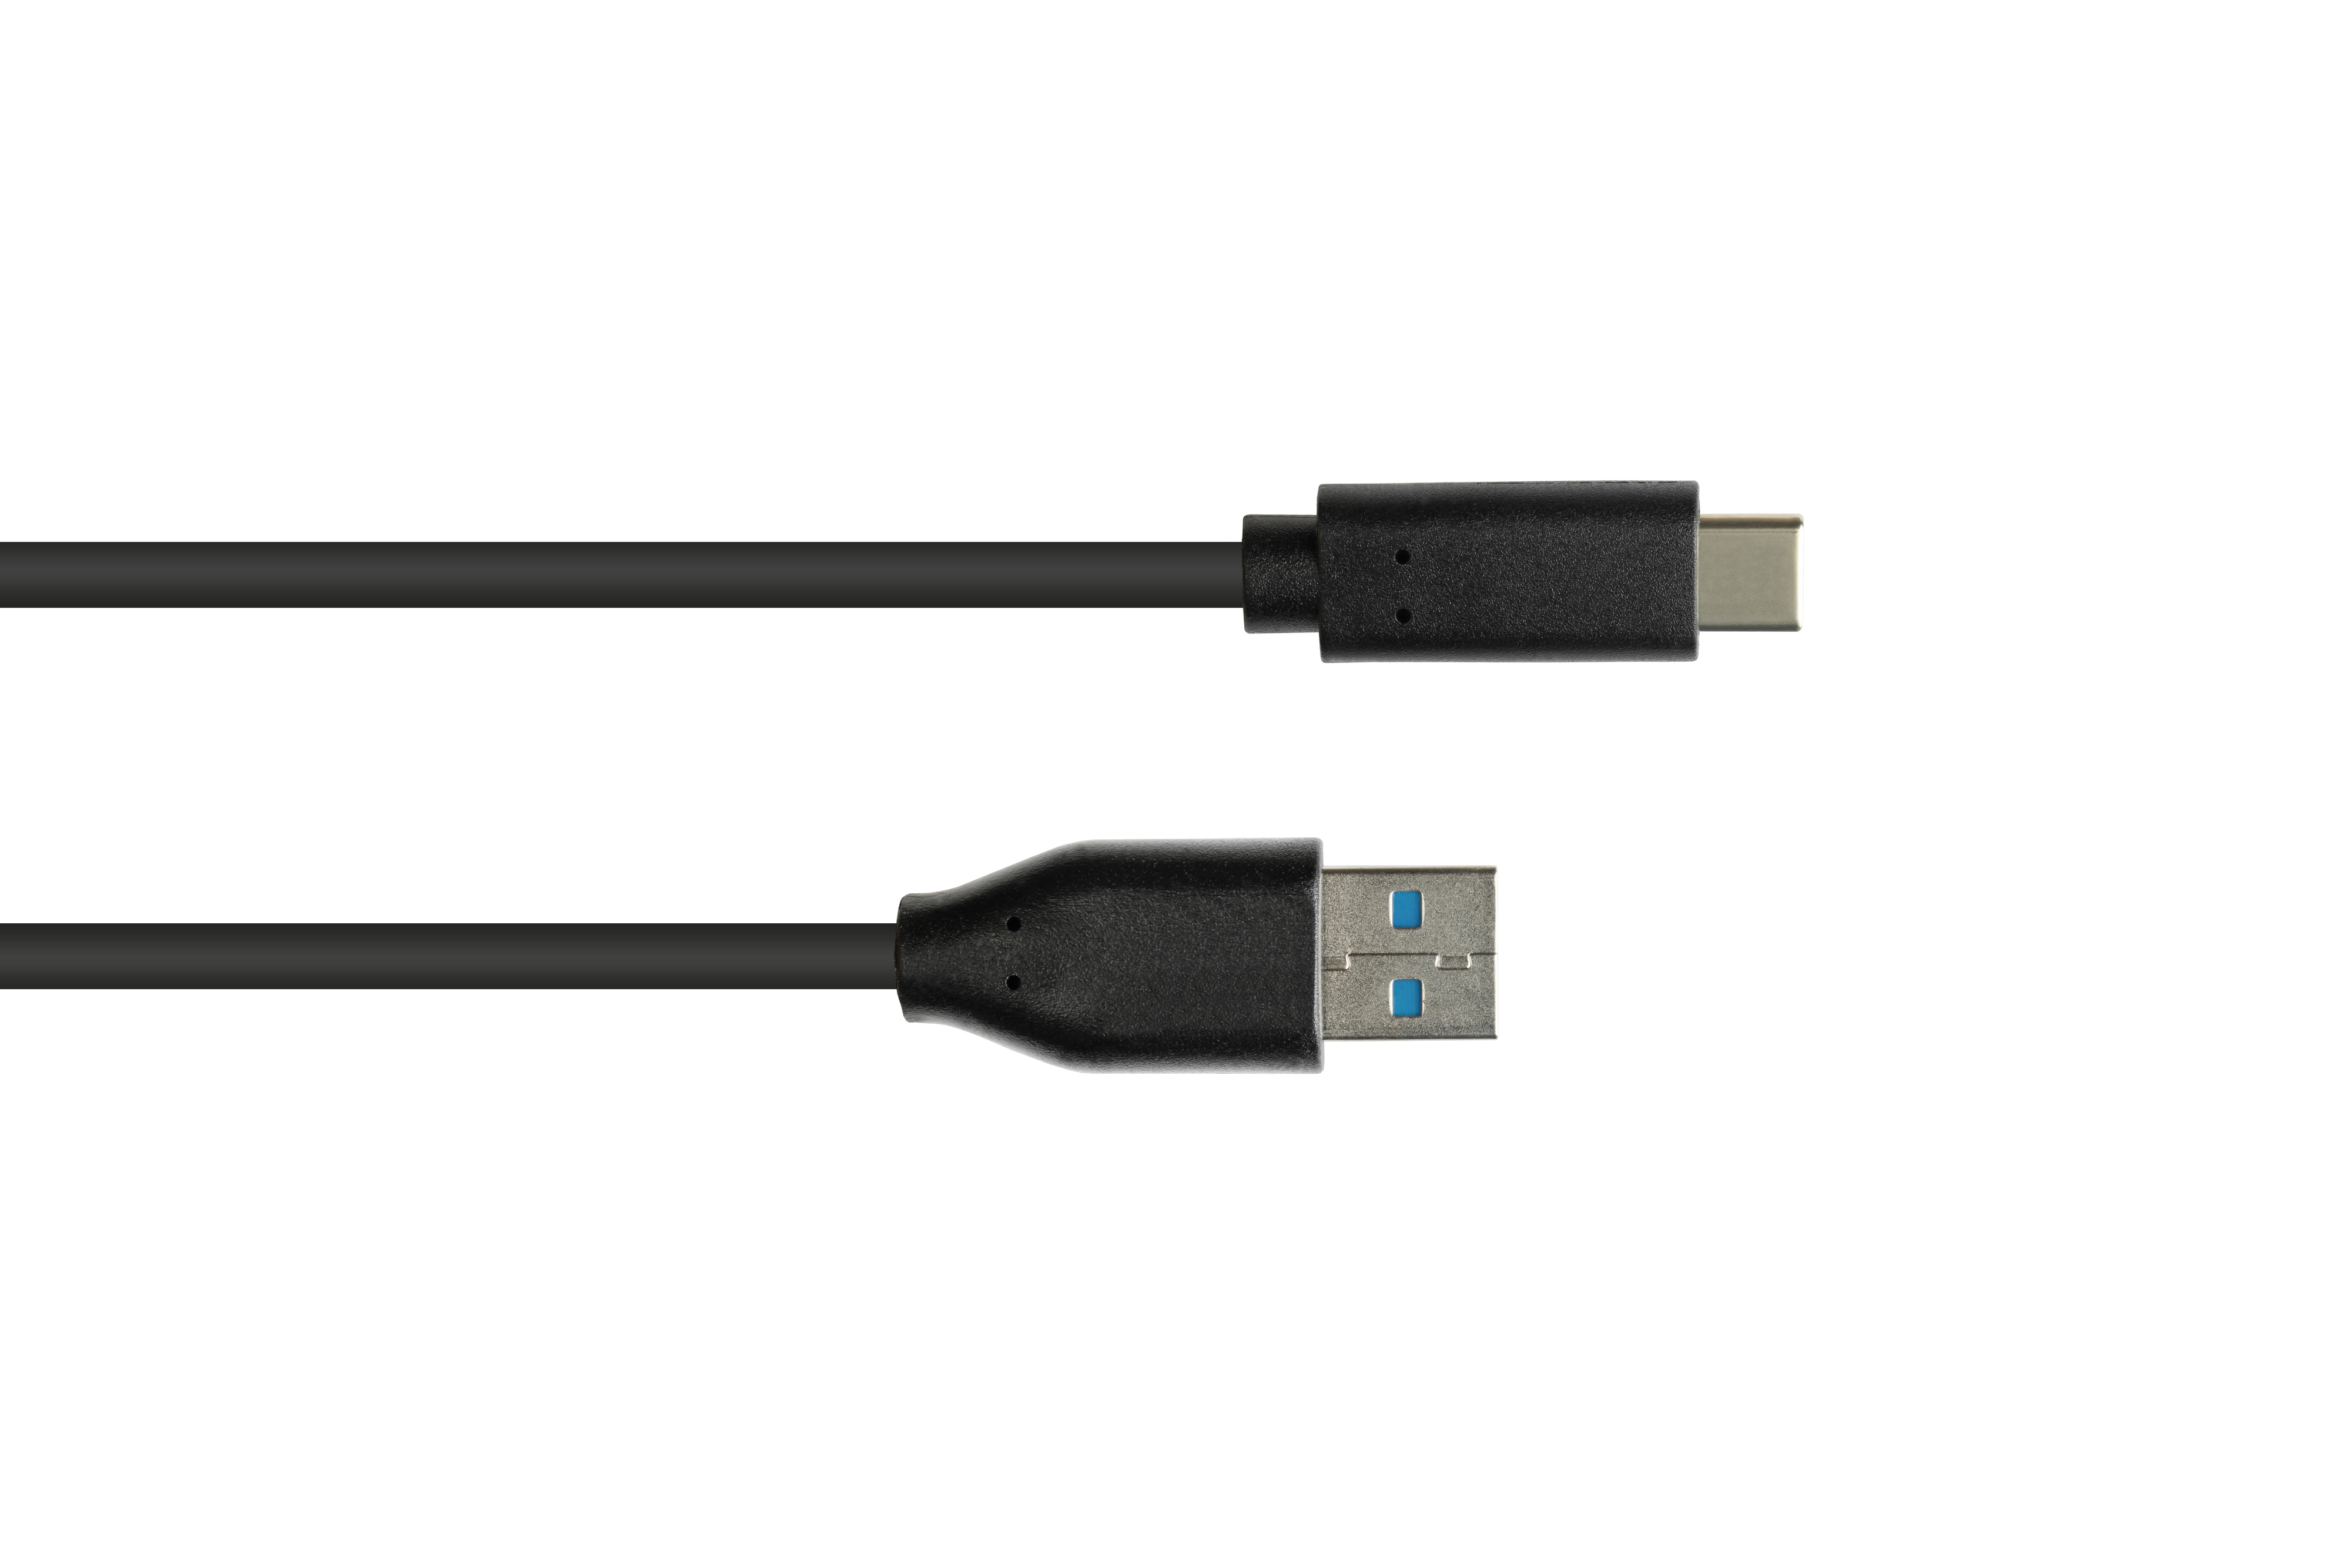 Stecker an CU, A schwarz 3.0 USB-C™ Stecker, Anschlusskabel KABELMEISTER USB